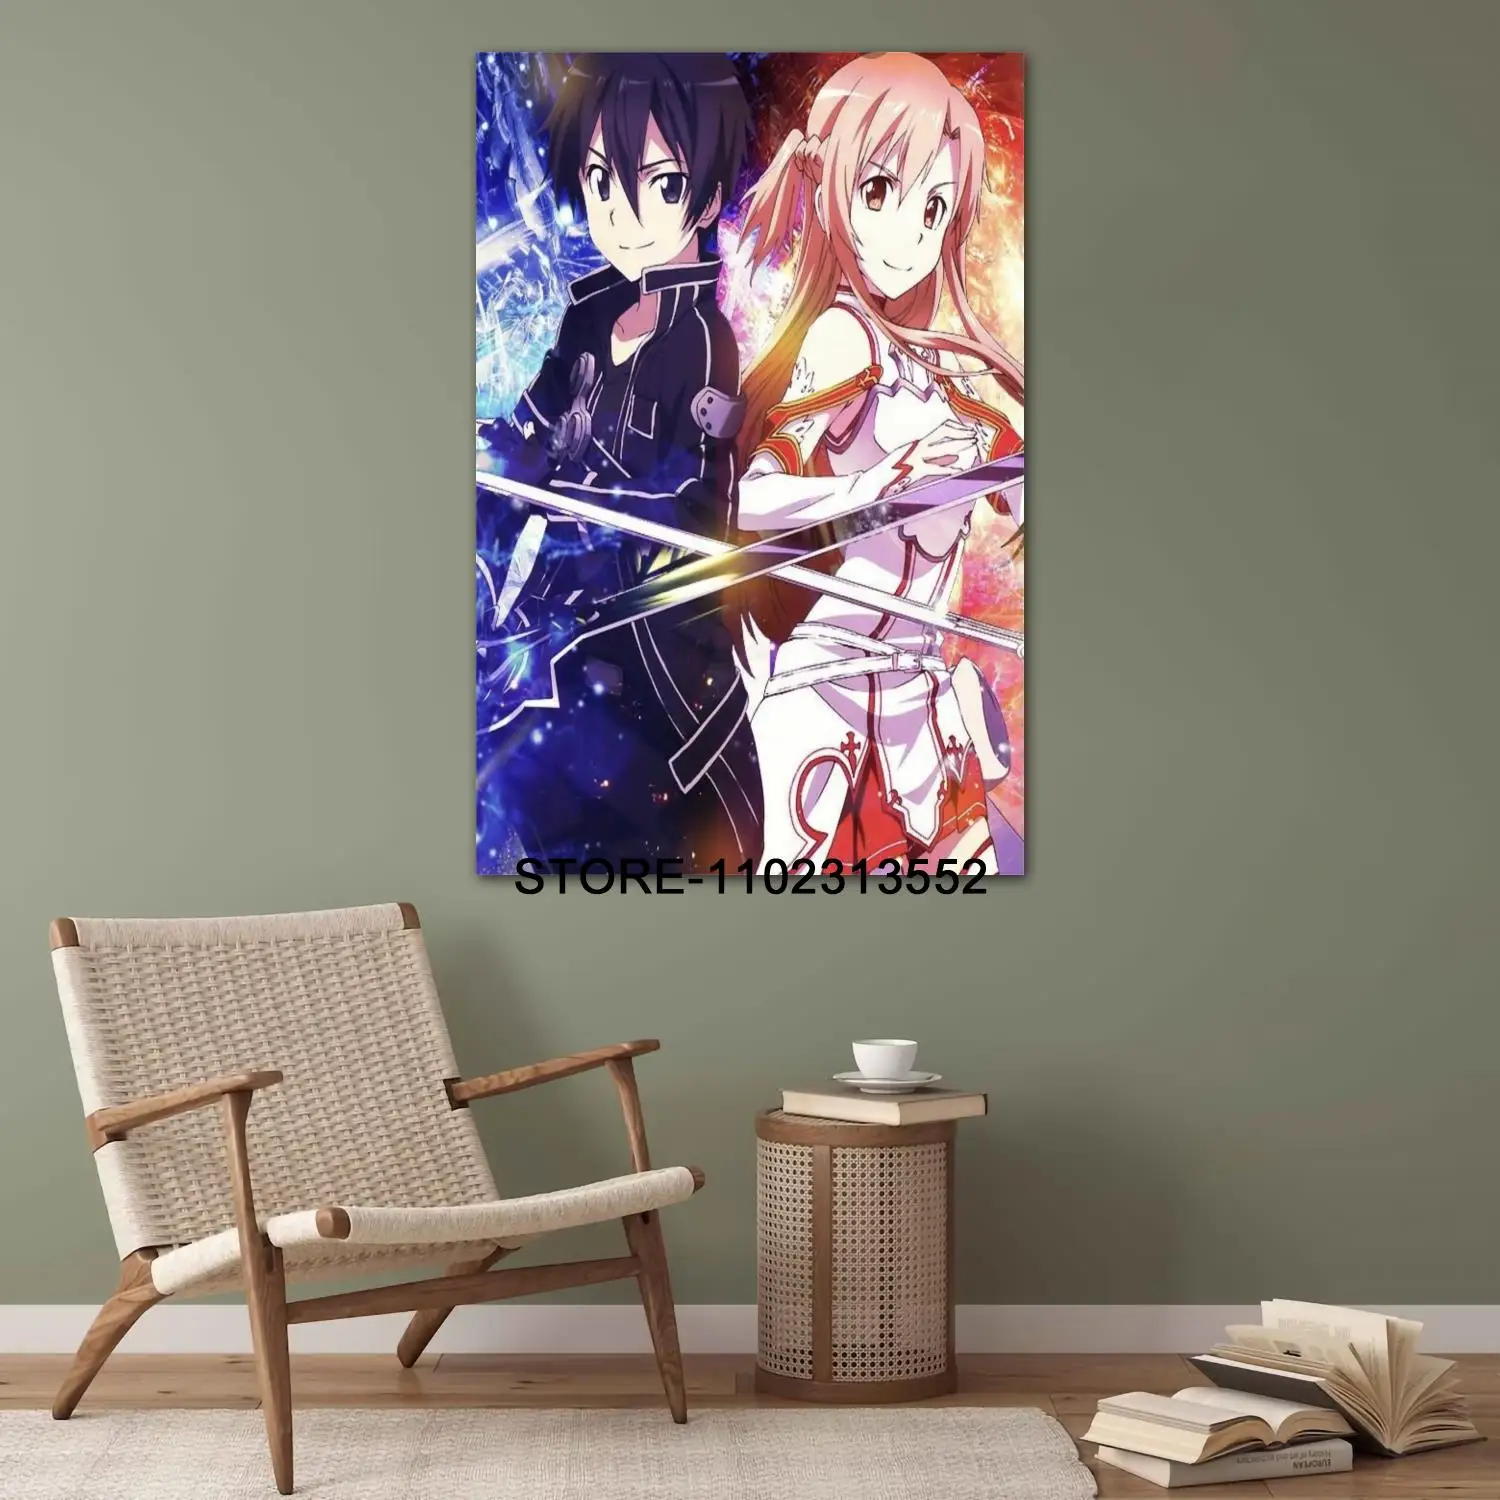 Imagen "S8639aa19d4c940178859a2d42e56cf18c" de muestra del producto Posters de Sword Art Online - Asuna y Kirito de la tienda online de regalos y coleccionables de cine, series, videojuegos, juguetes.